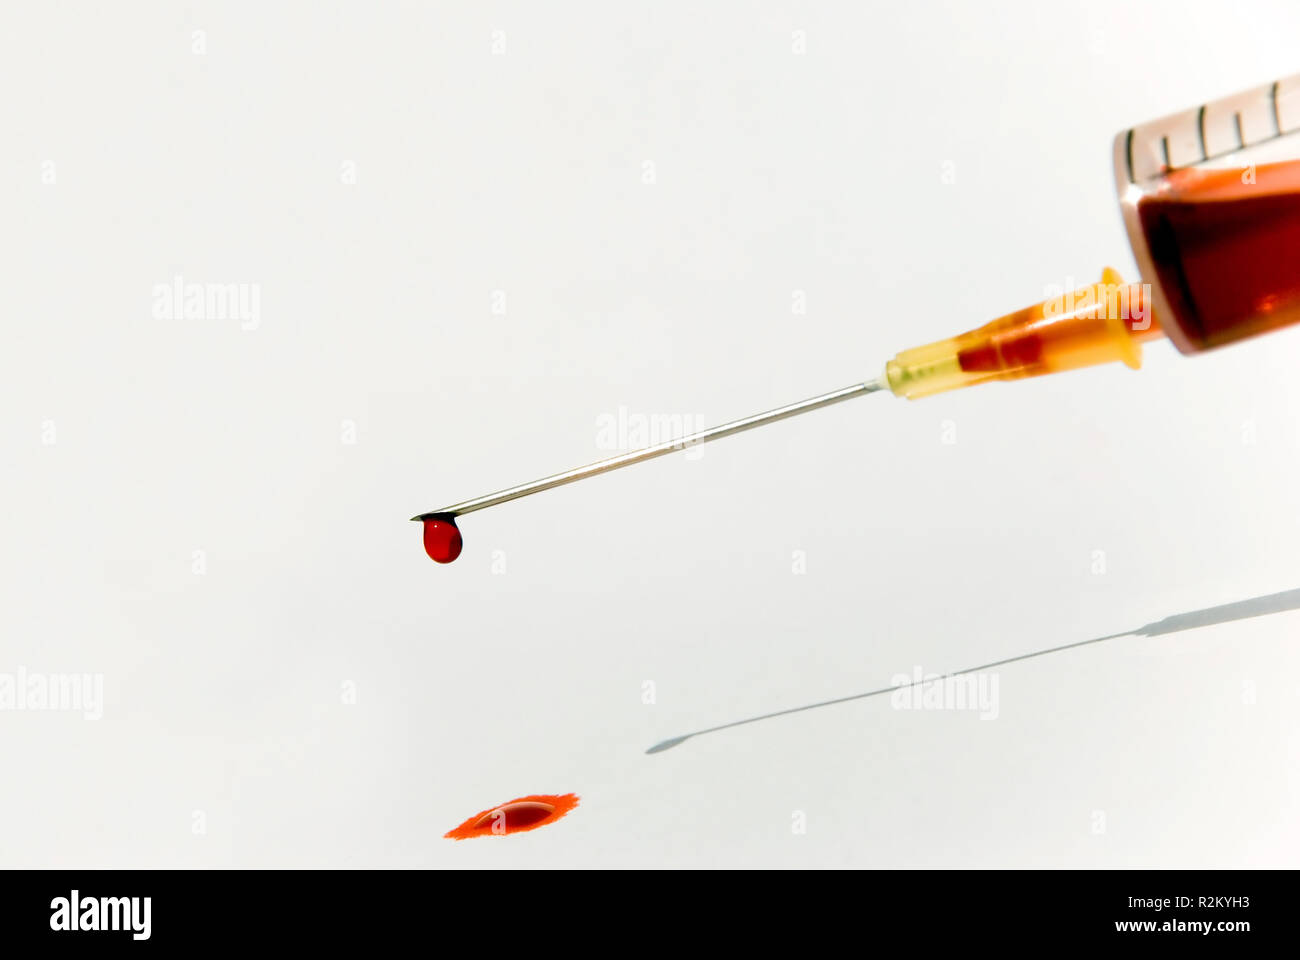 syringe with blood 2 Stock Photo